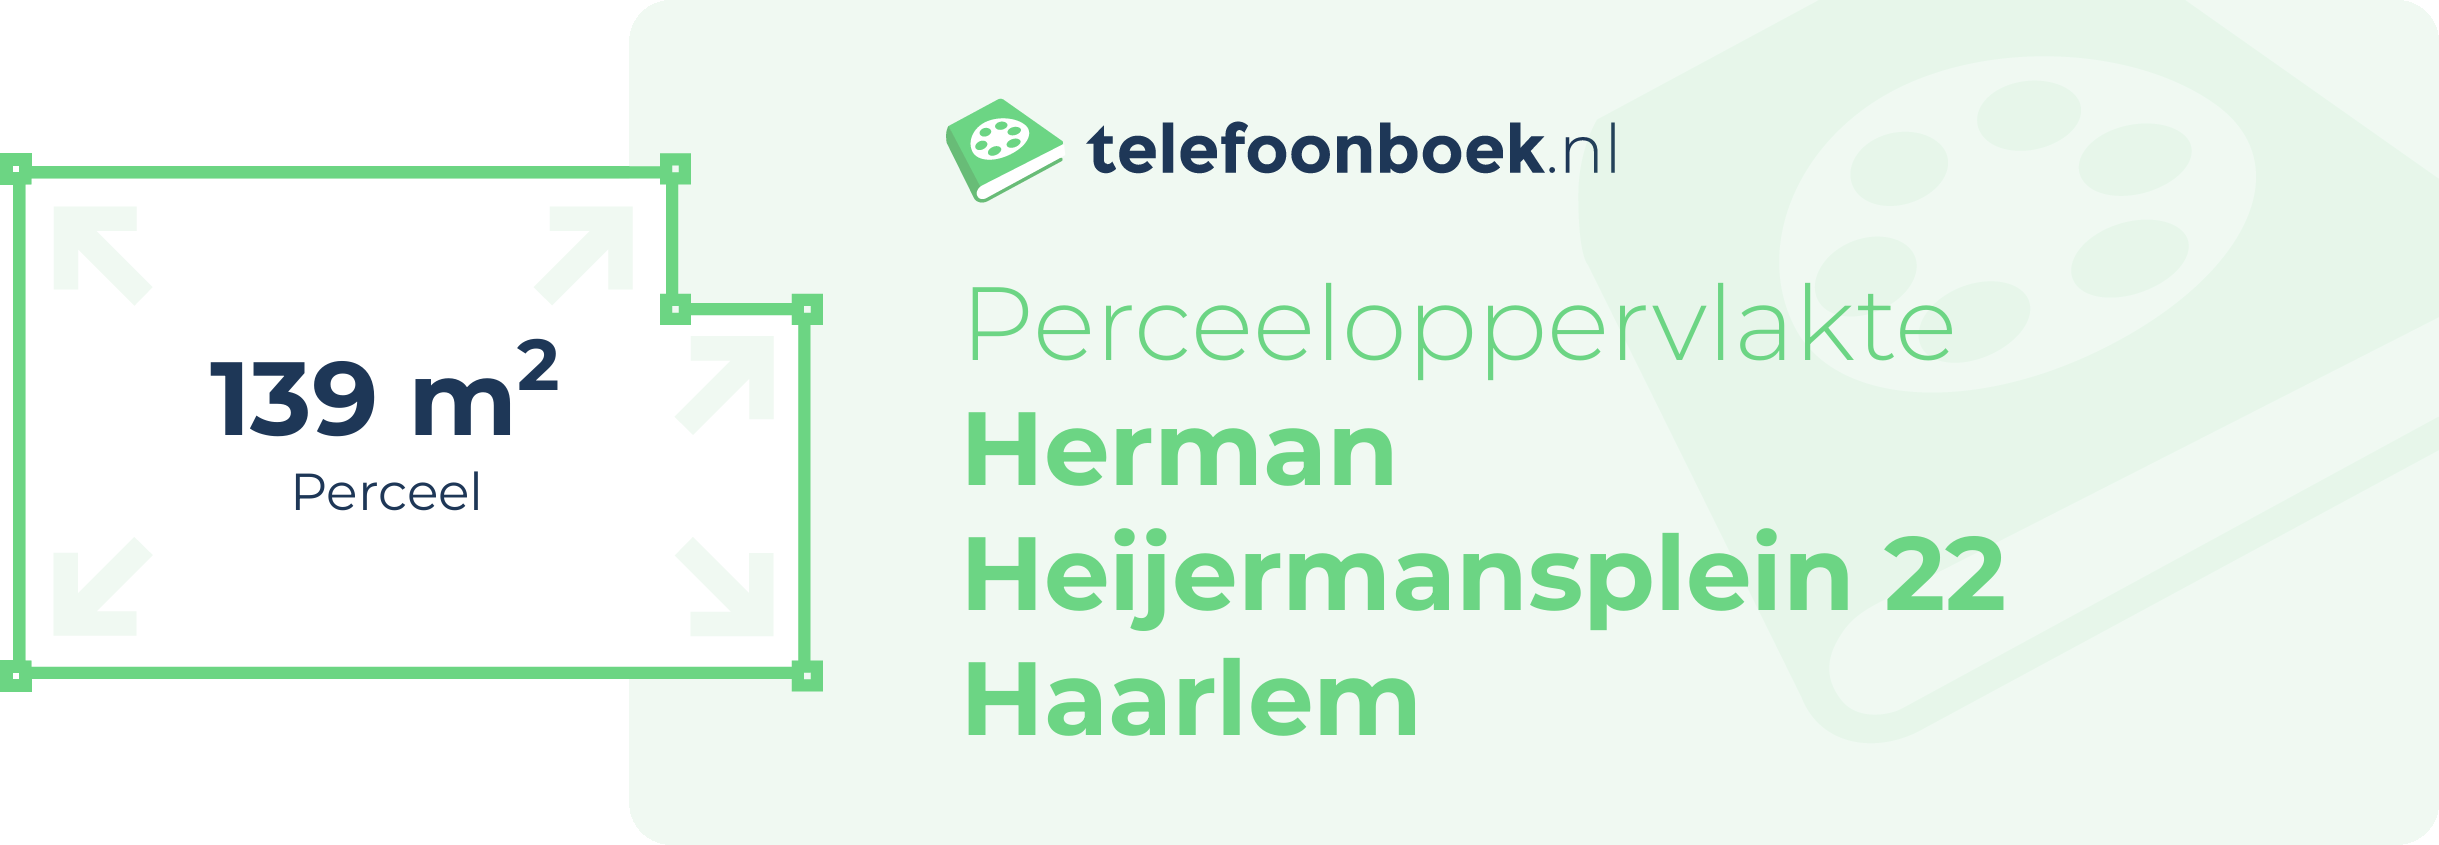 Perceeloppervlakte Herman Heijermansplein 22 Haarlem